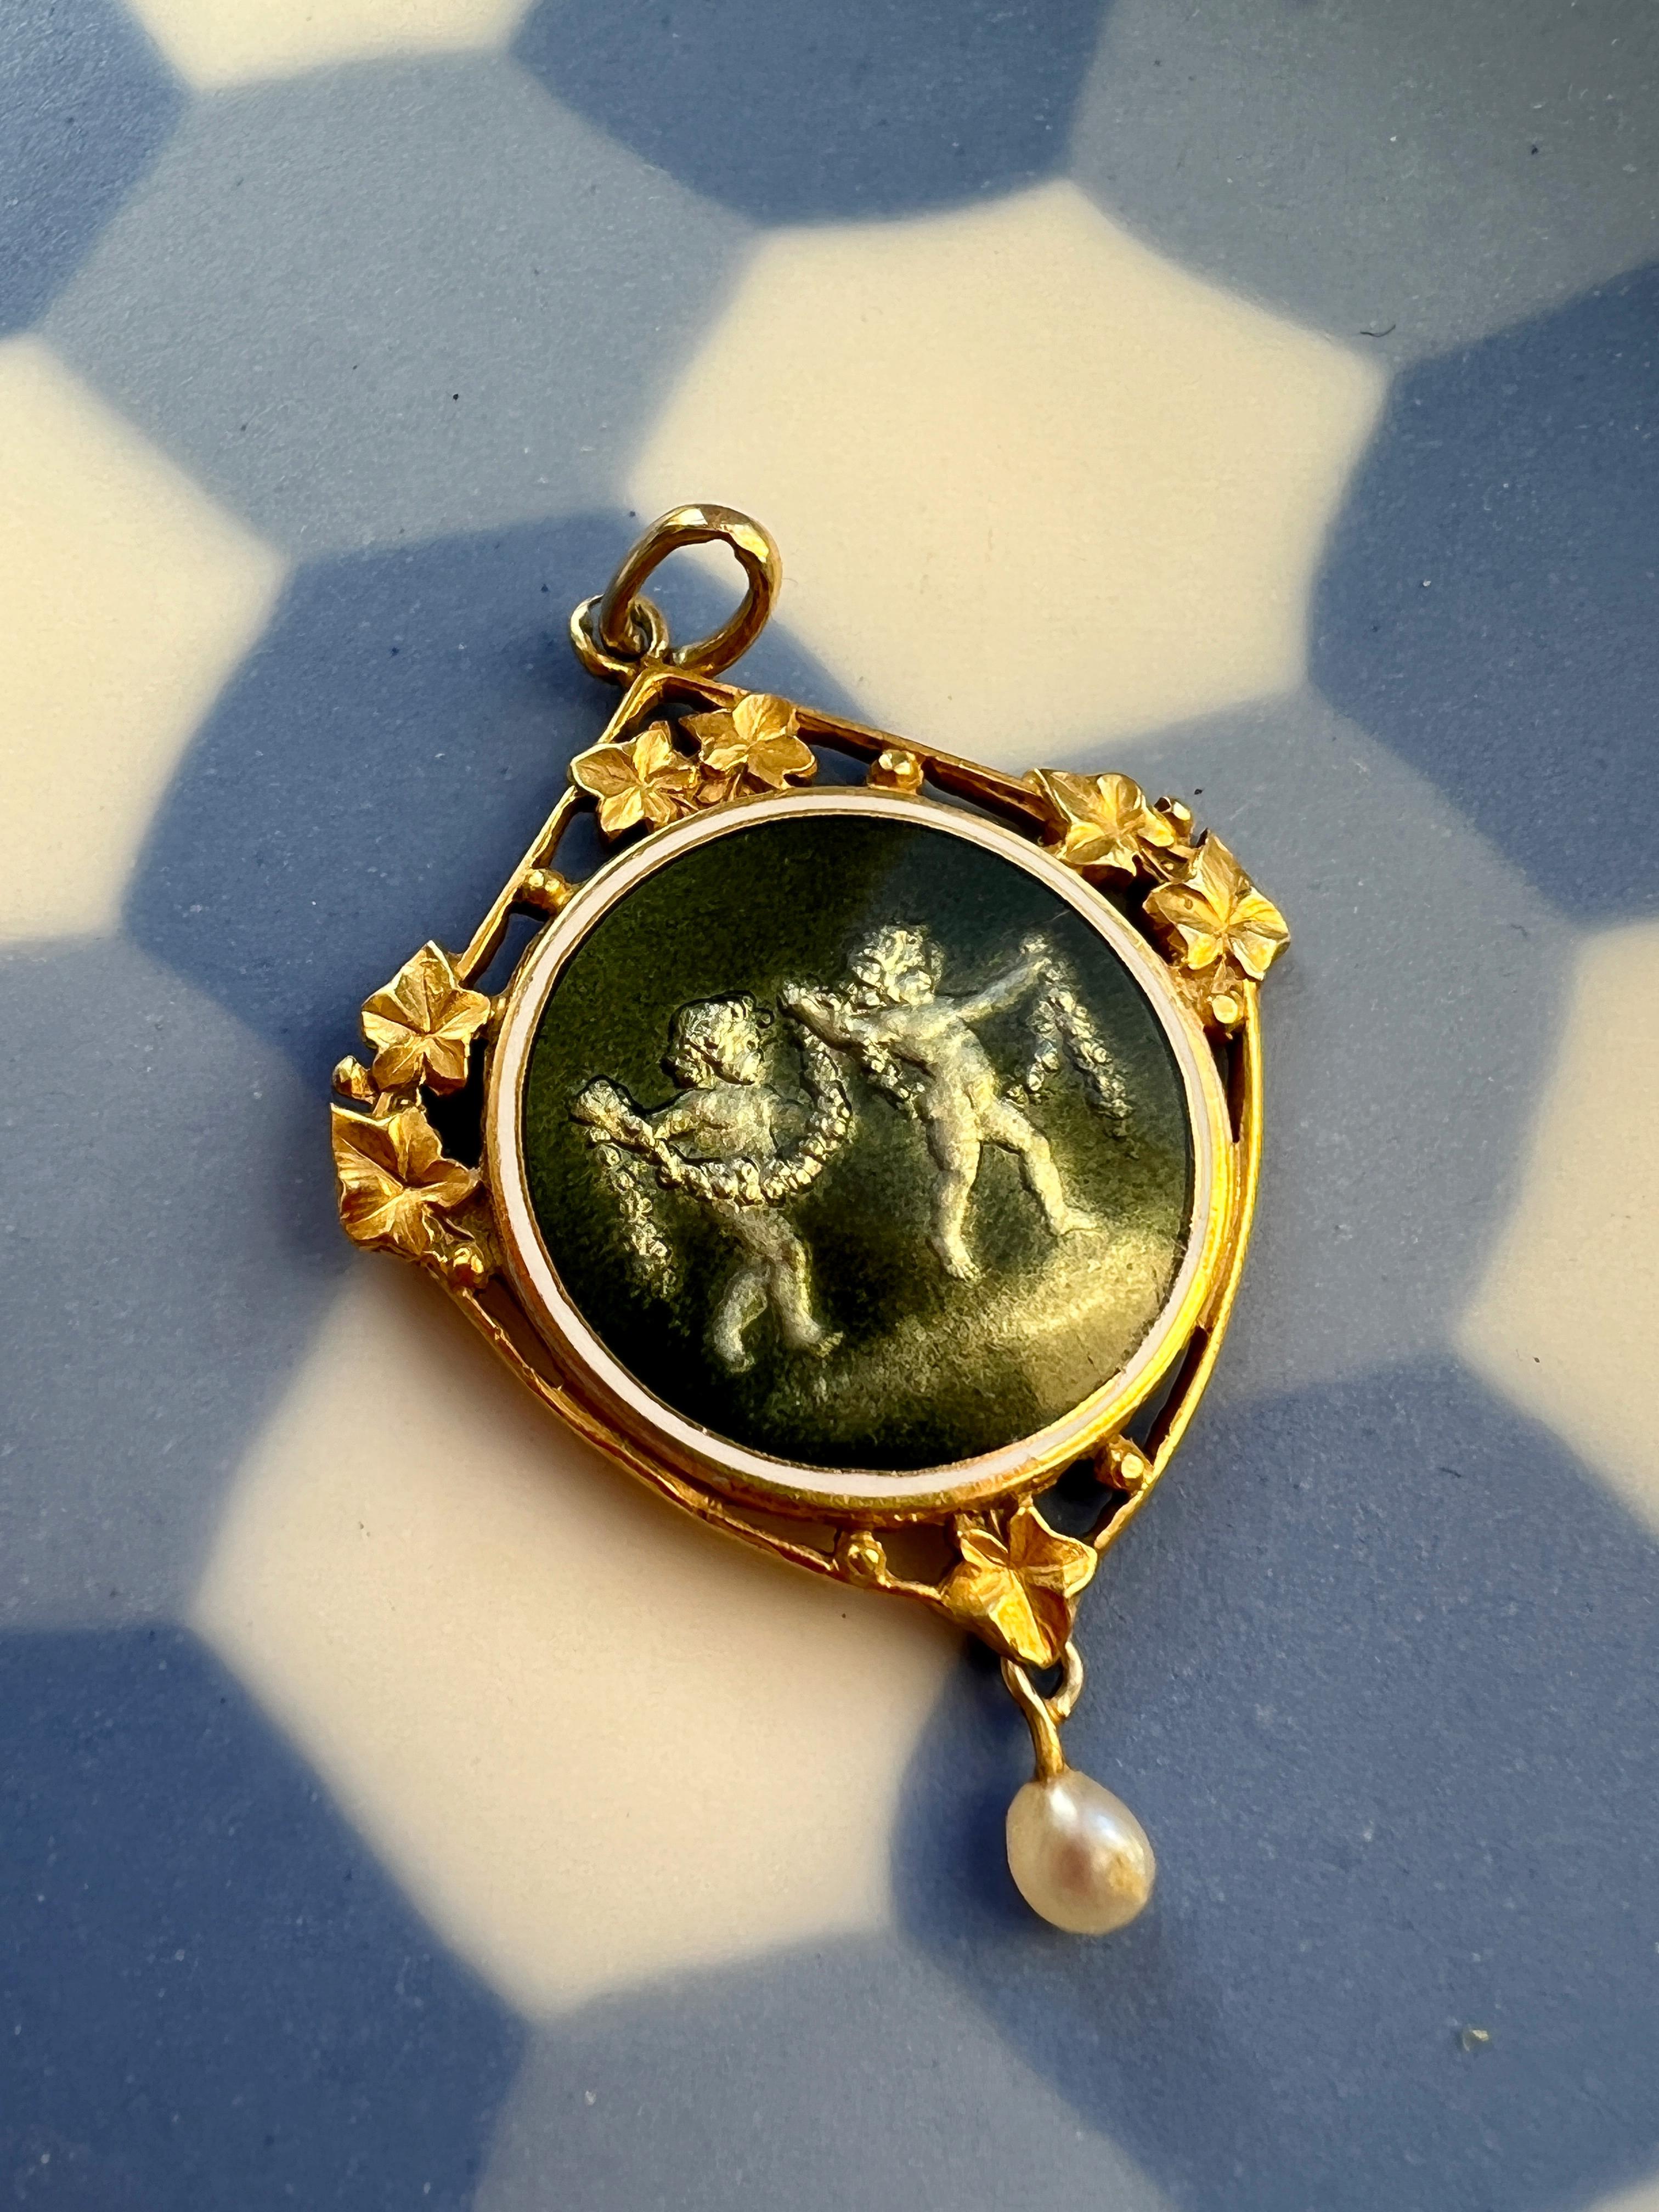 Nous avons devant nous un pendentif médaille en or 18 carats de l'époque Art nouveau, très attrayant et inhabituel, présentant un émail suisse rare aux couleurs métalliques : la couleur passe d'un vert olive à un gris minéral sous différents